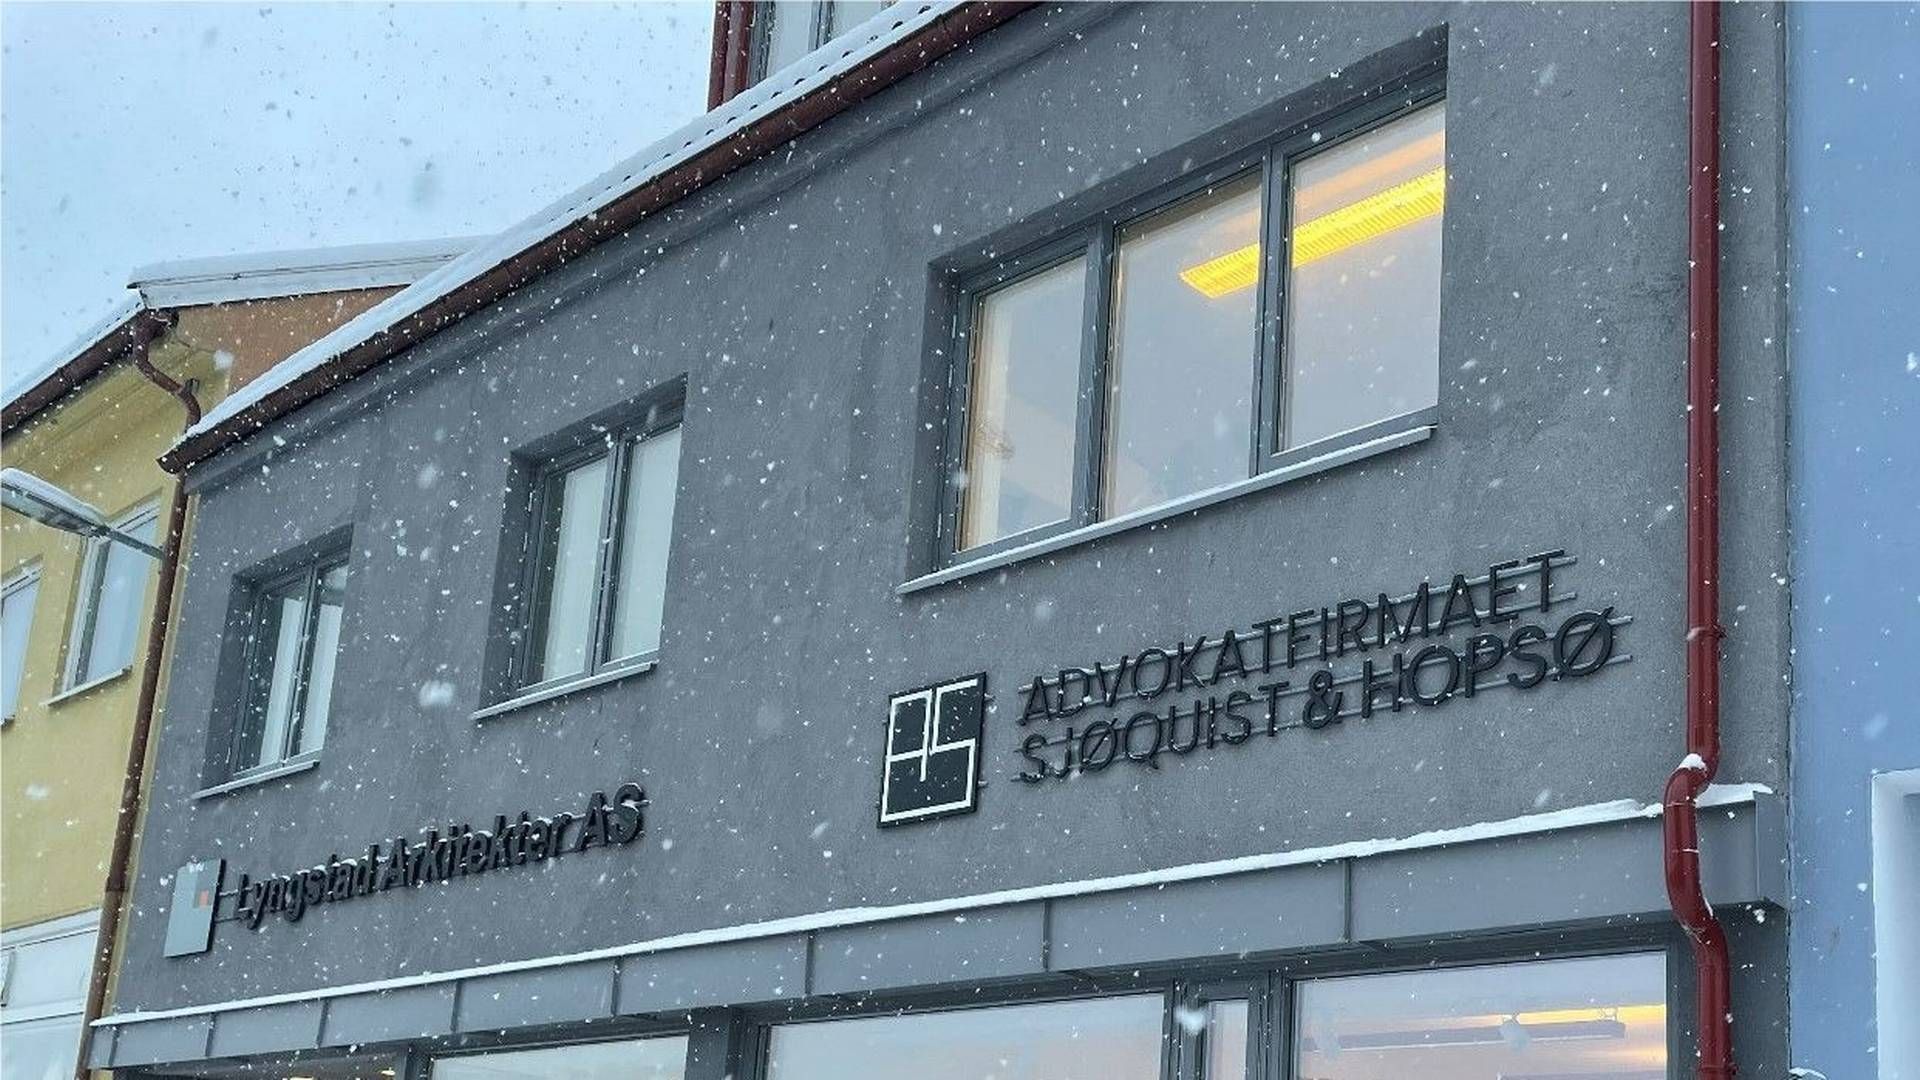 Advokatfirmaet Sjøquist og Hopsøs kontor i Steinkjer. | Foto: Advokatfirmaet Sjøquist og Hopsø